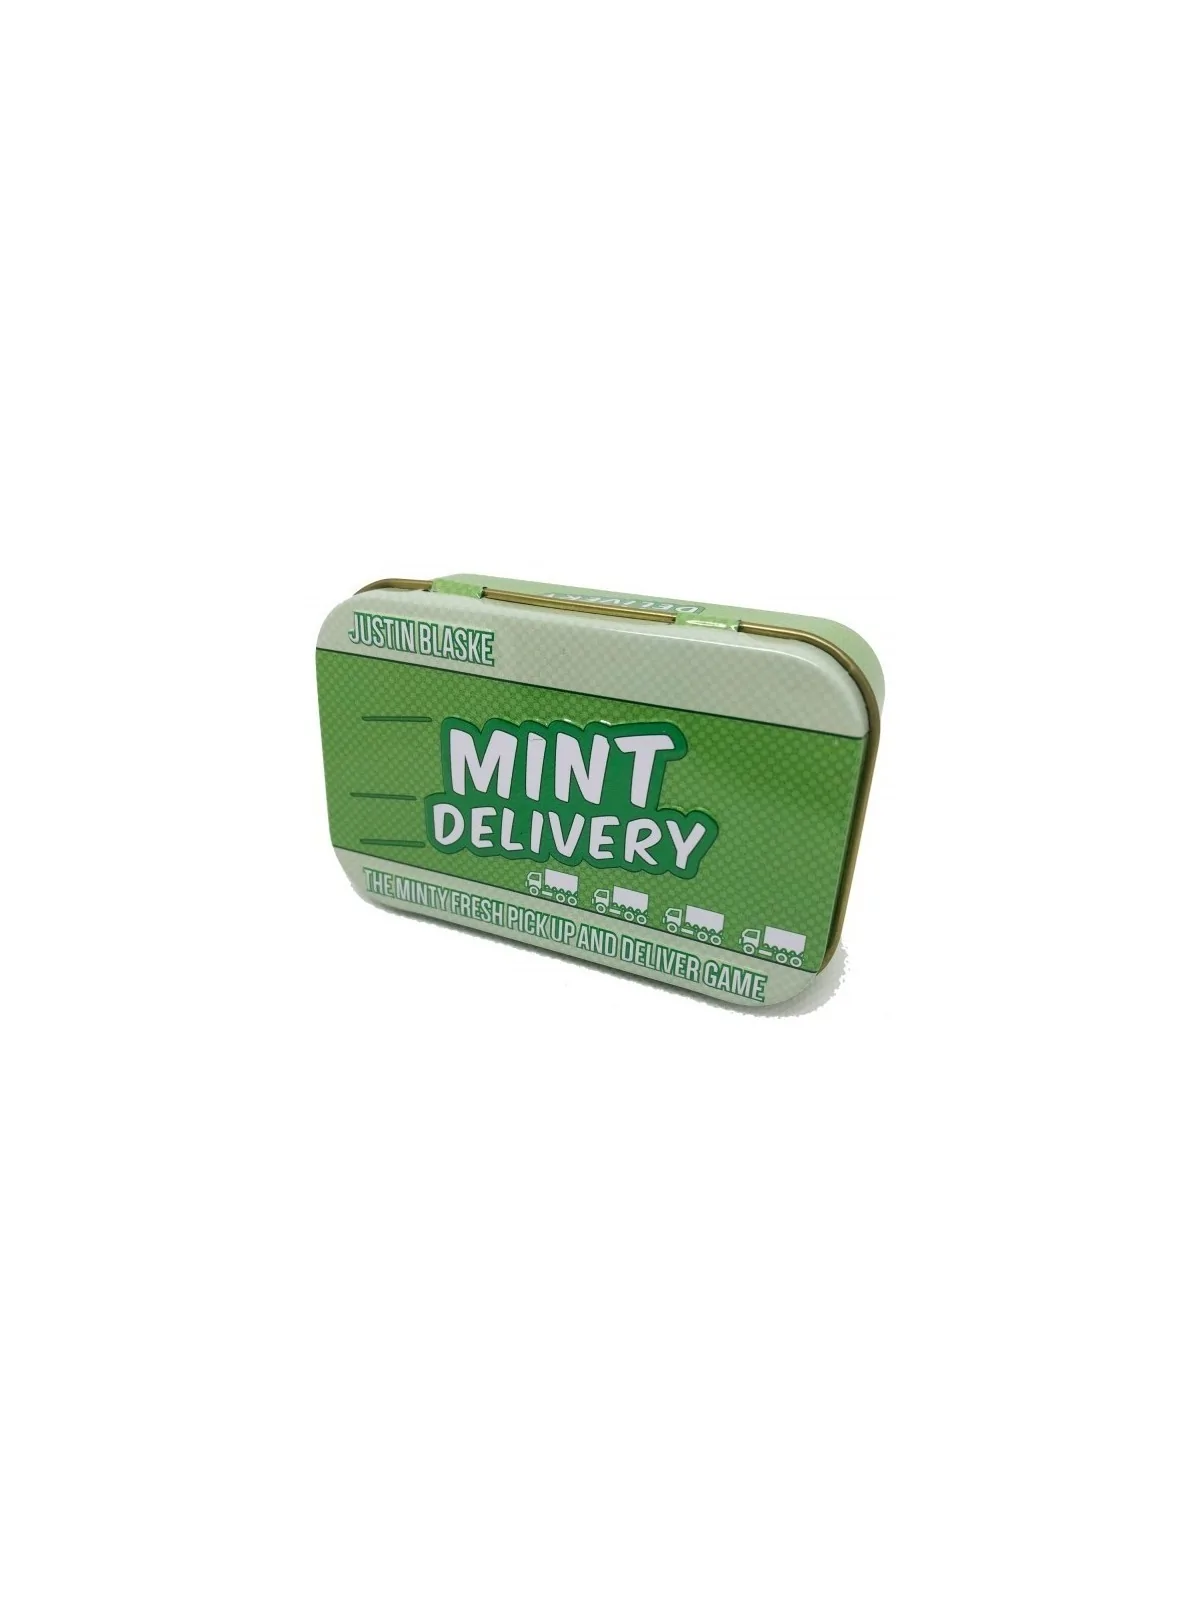 Comprar Mint Delivery (Inglés) barato al mejor precio 13,50 € de Poket